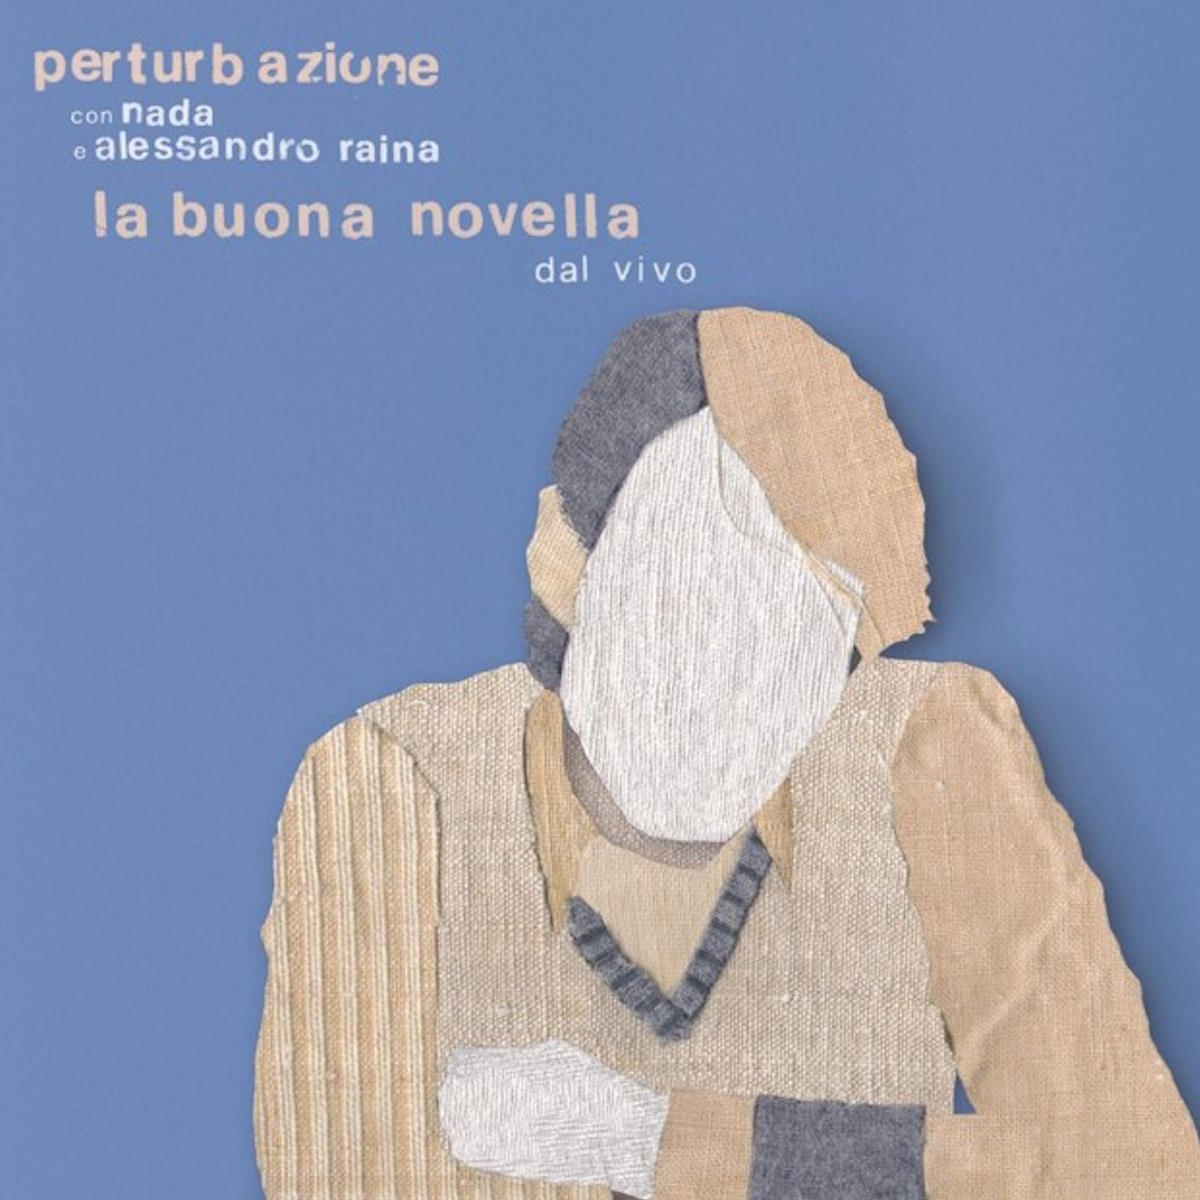 I Perturbazione: in uscita l'album La Buona Novella, una rilettura live dell'omonimo album di Fabrizio De André, con Nada ed Alessandro Raina